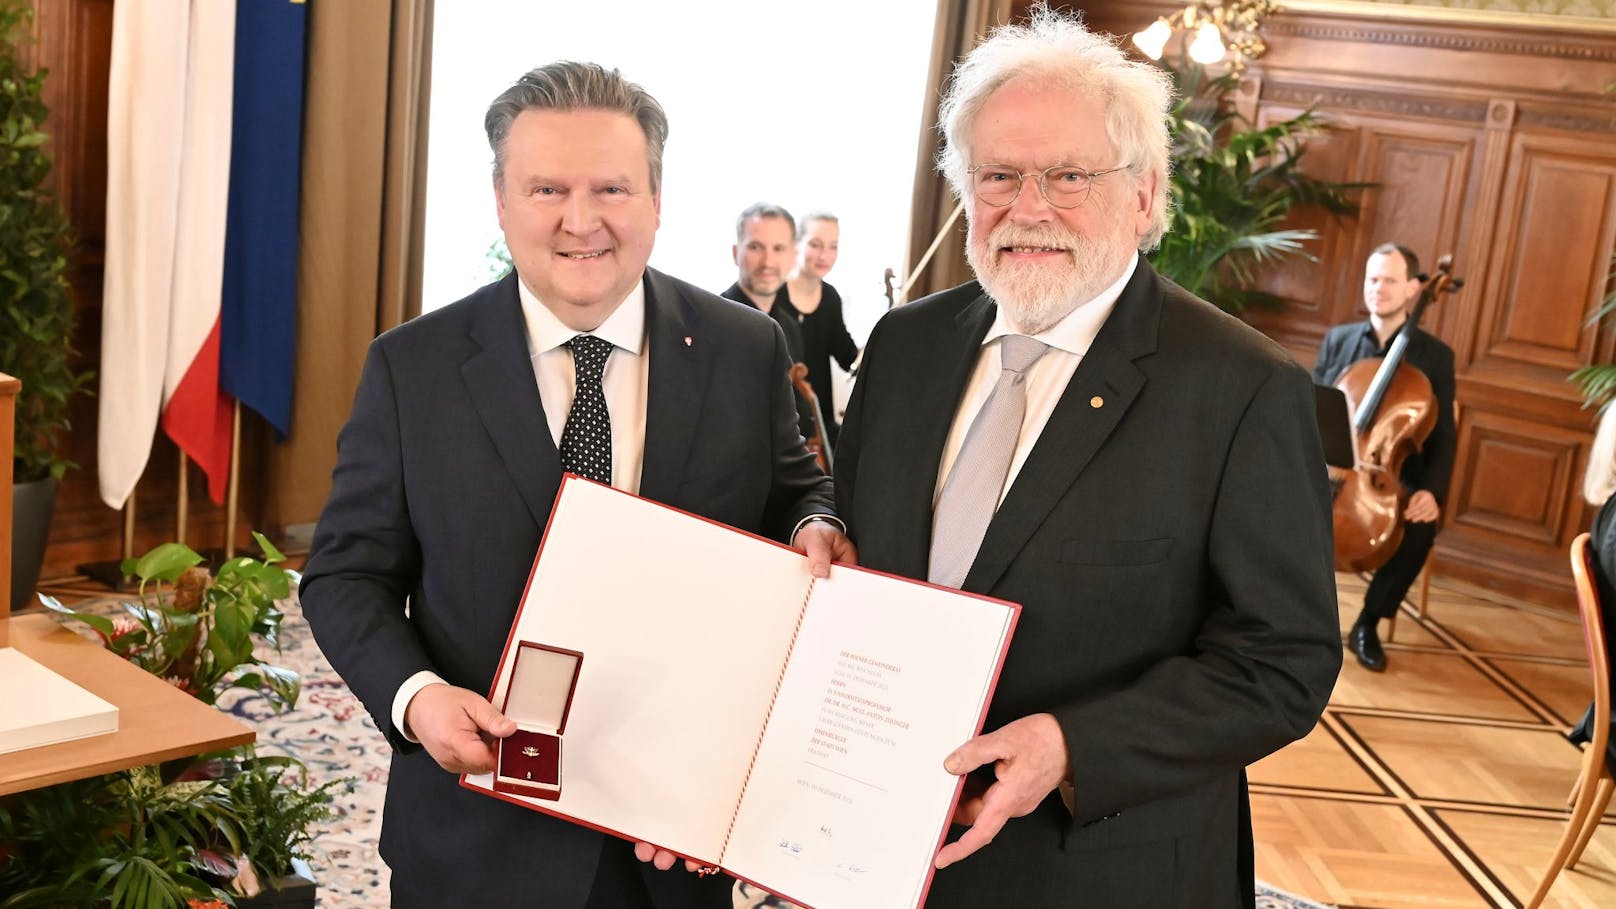 Nobelpreisträger Zeilinger nun Ehrenbürger von Wien